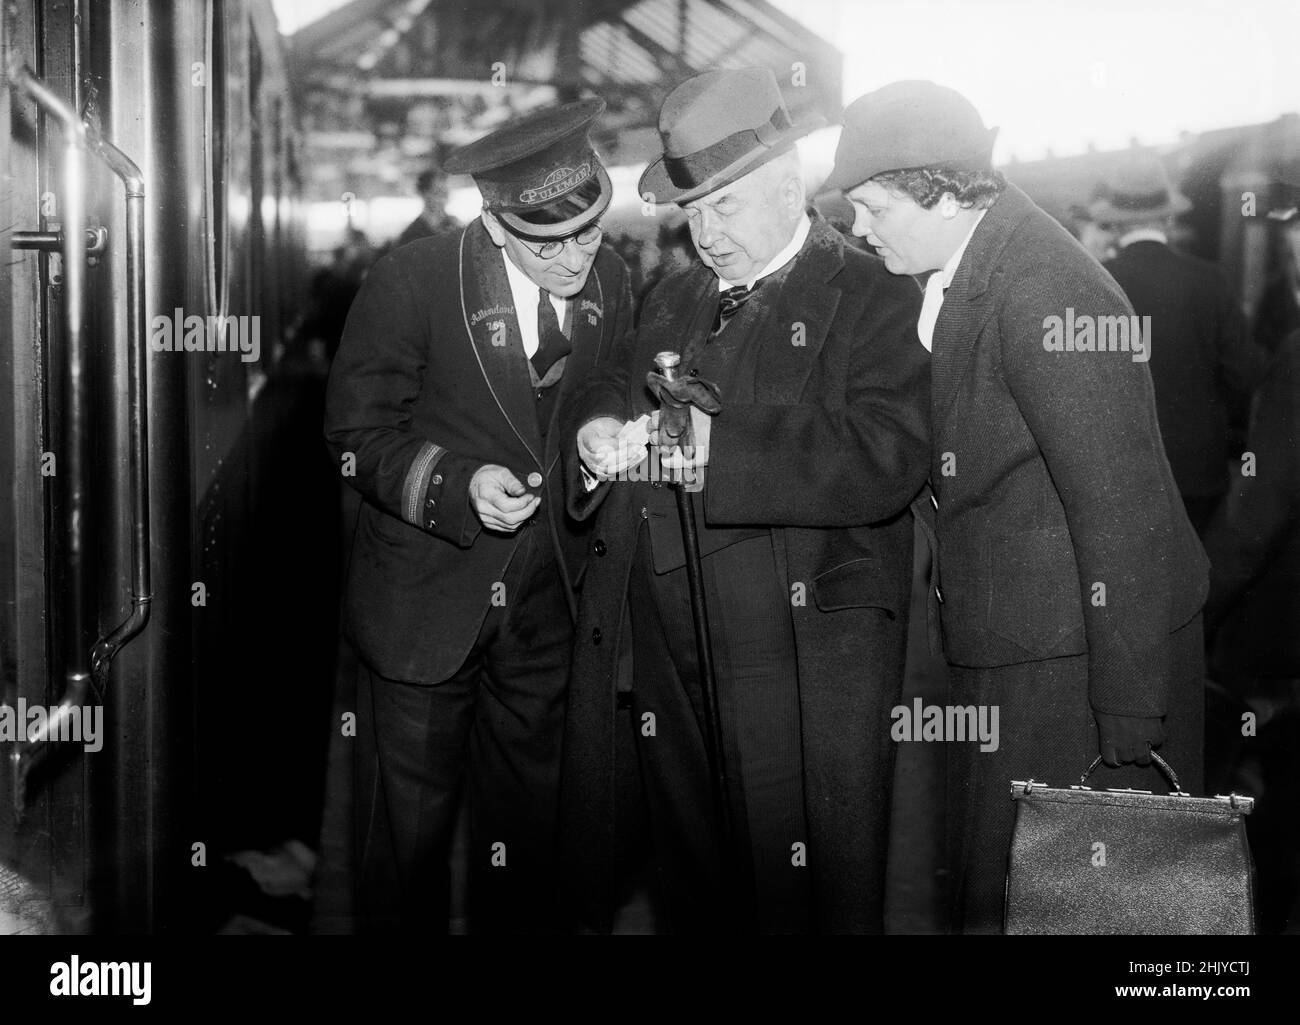 Ein Bahnbegleiter auf einem Pullman-Auto, inspiziert die Tickets von zwei Passagieren, an einem Bahnhof in England, c 1930 - 1940. Quelle: The DL Archive Collection/Alamy Stockfoto